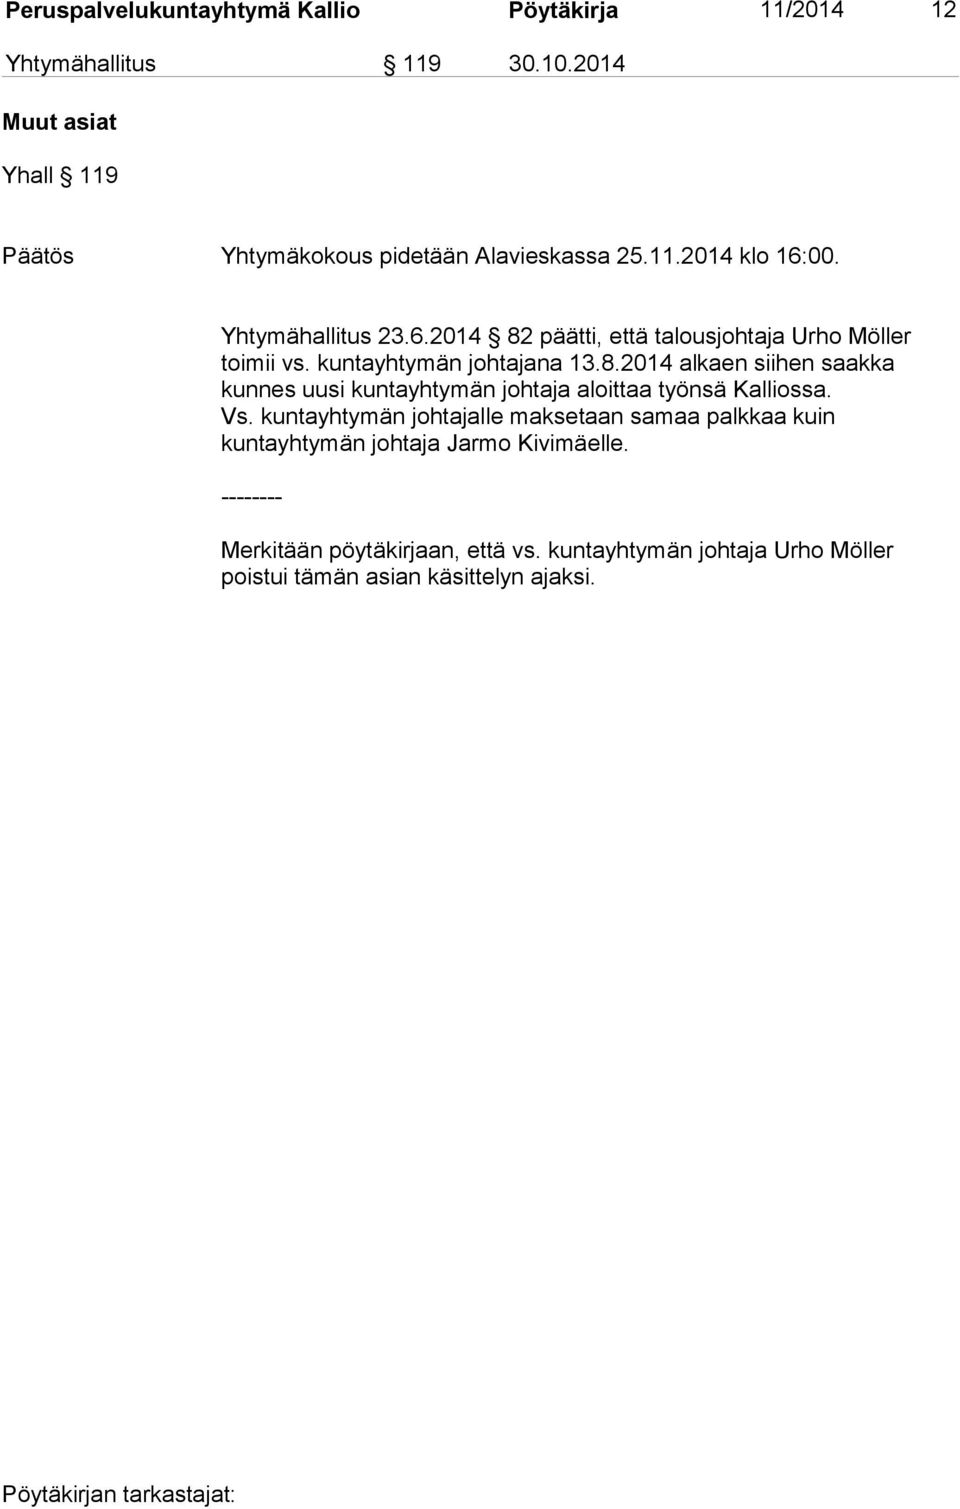 kuntayhtymän johtajana 13.8.2014 alkaen siihen saakka kunnes uusi kuntayhtymän johtaja aloittaa työnsä Kalliossa. Vs.